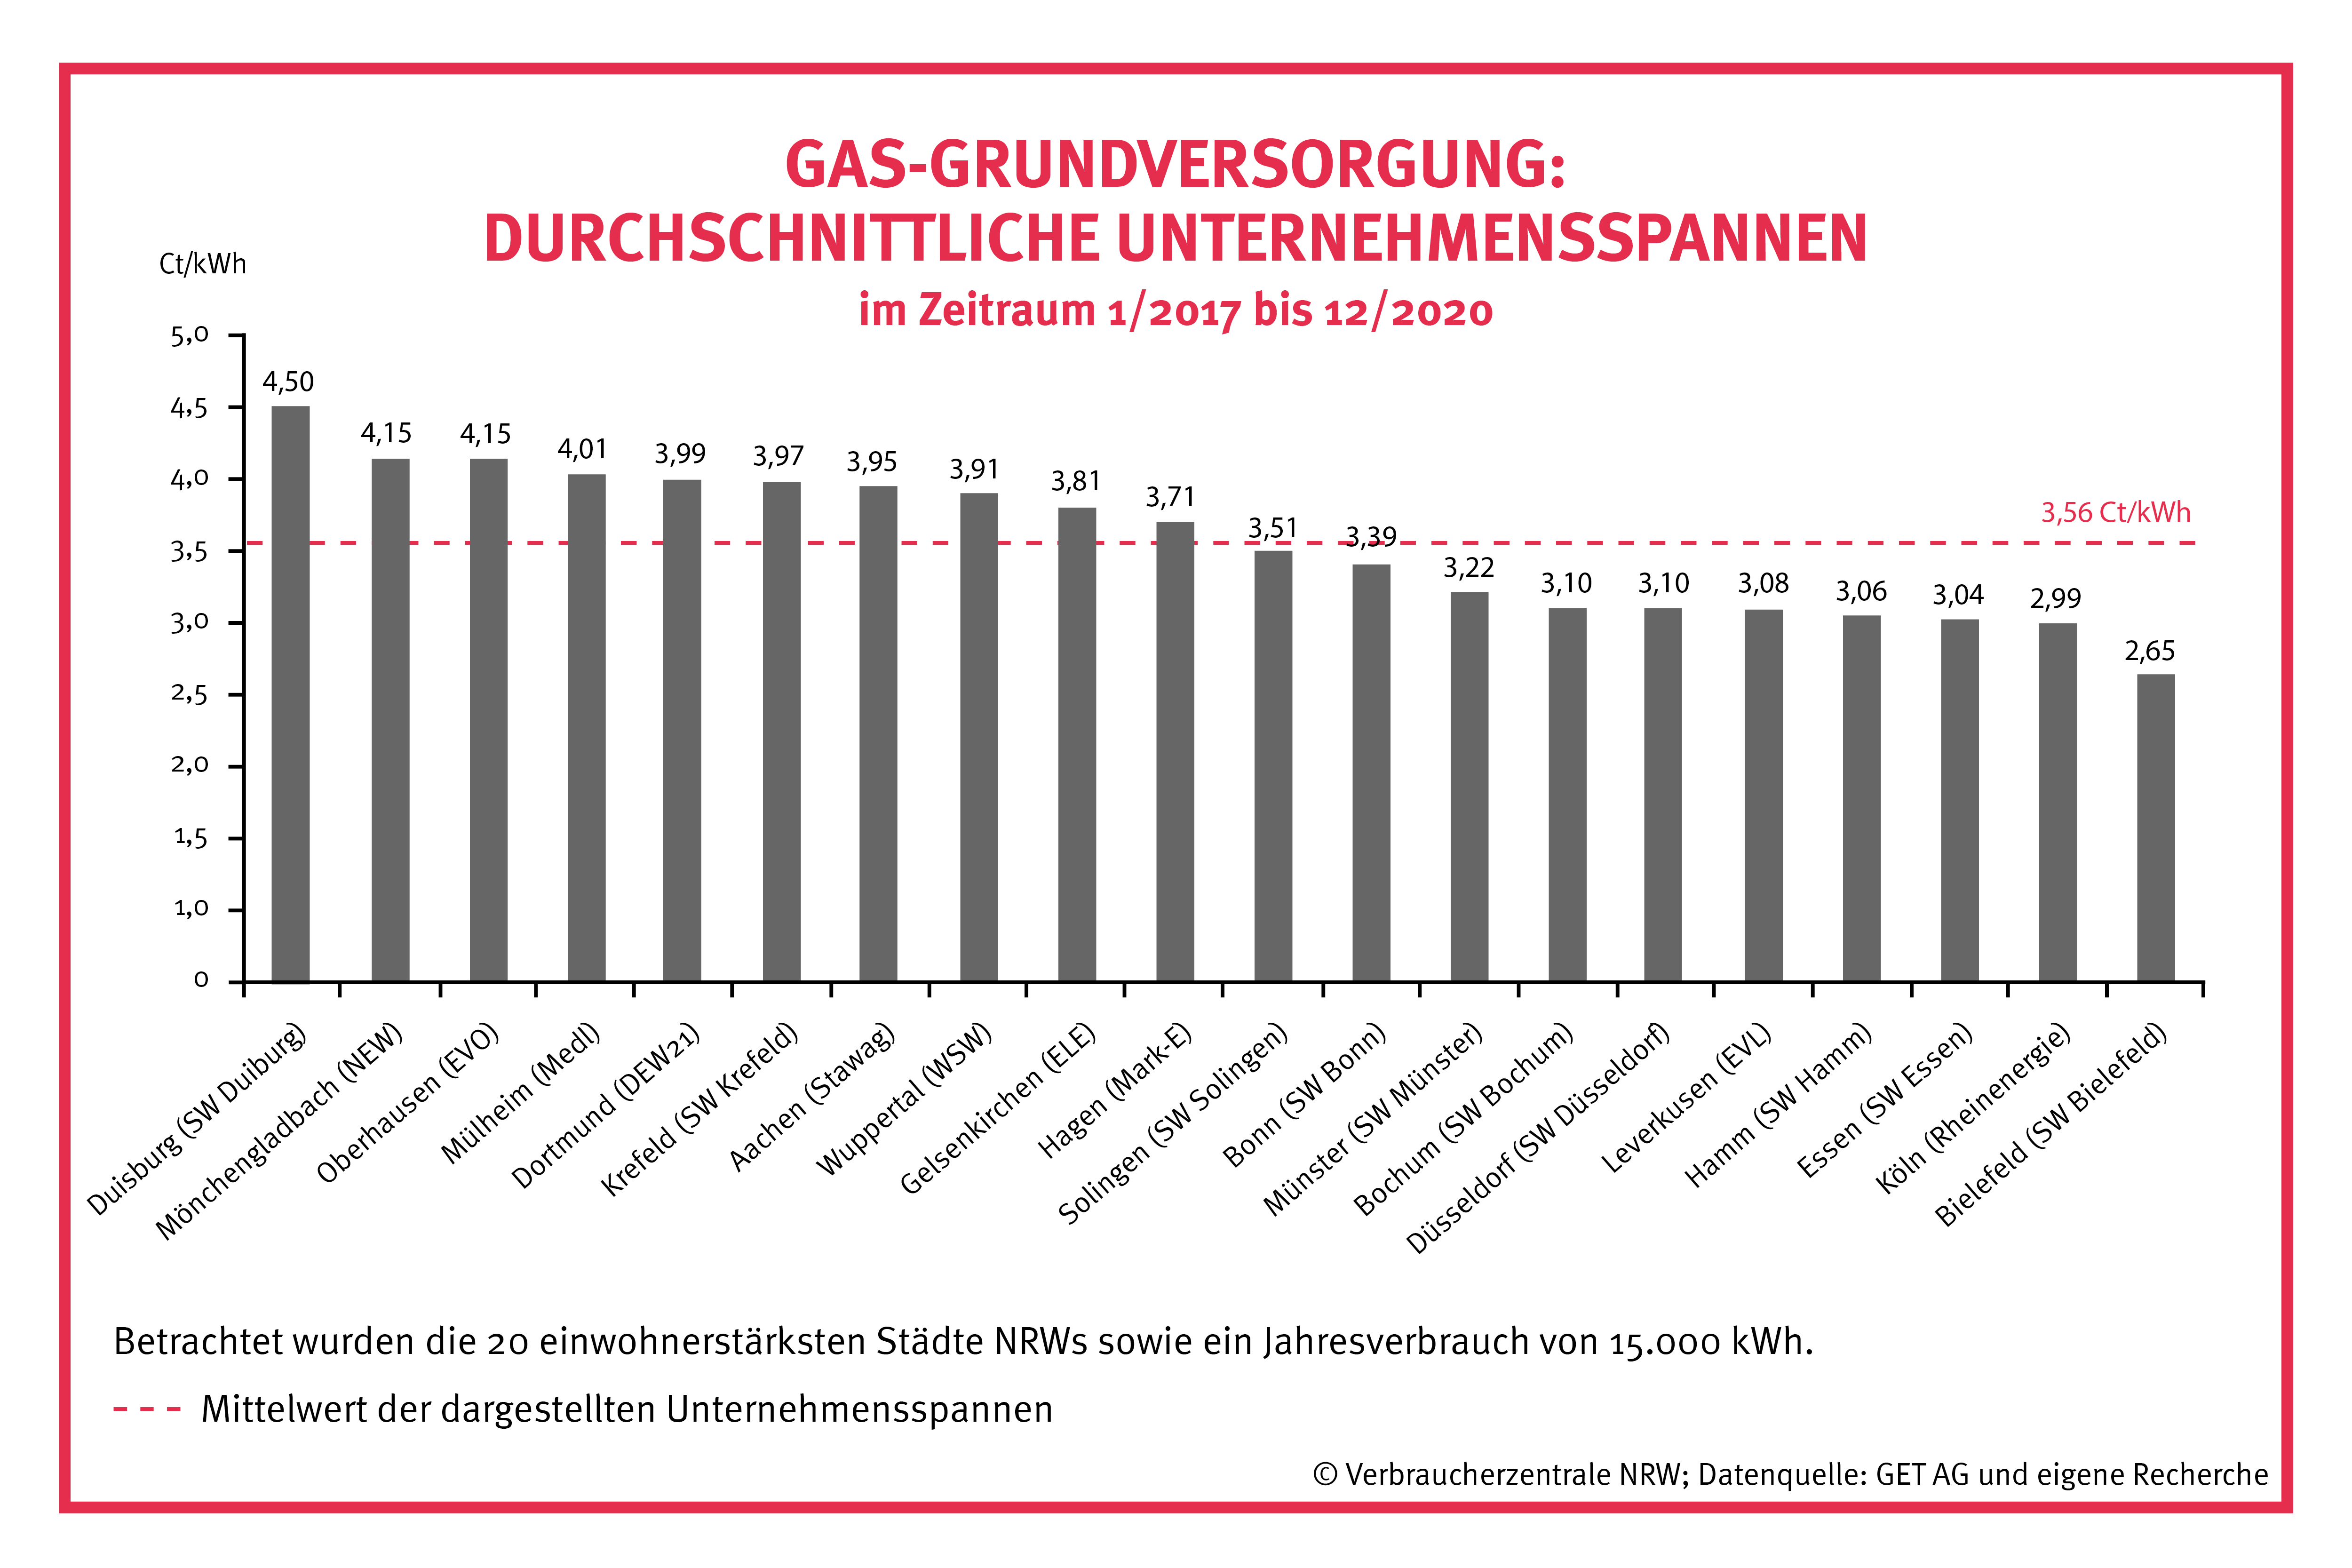 Grafik: Durchschnittliche Unternehmensspannen in der Gas-Grundversorgung